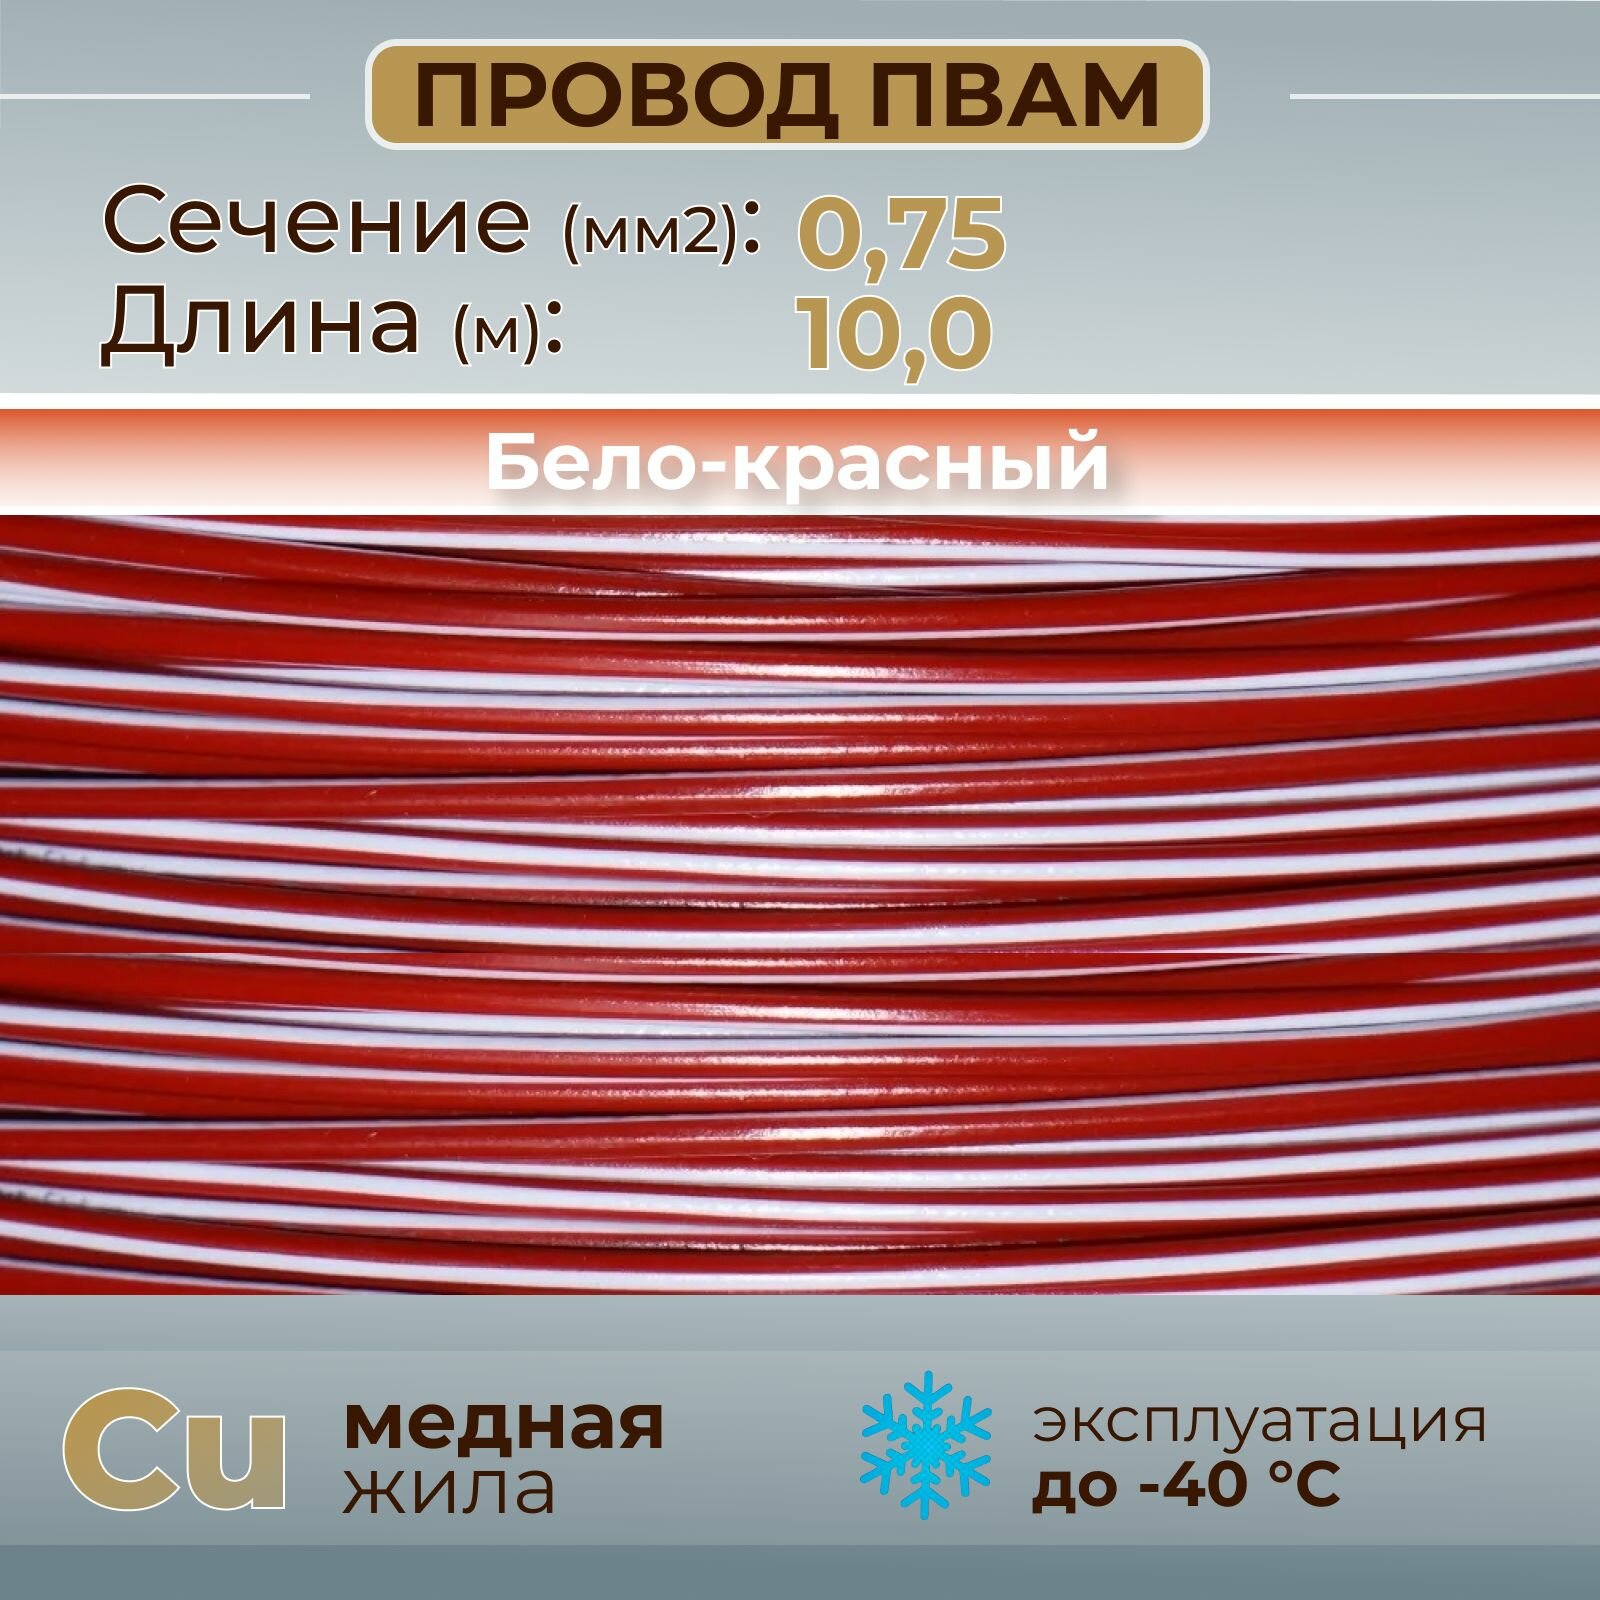 Провода автомобильные пвам цвет бело-красный с сечением 0,75 кв. мм, длина 10м